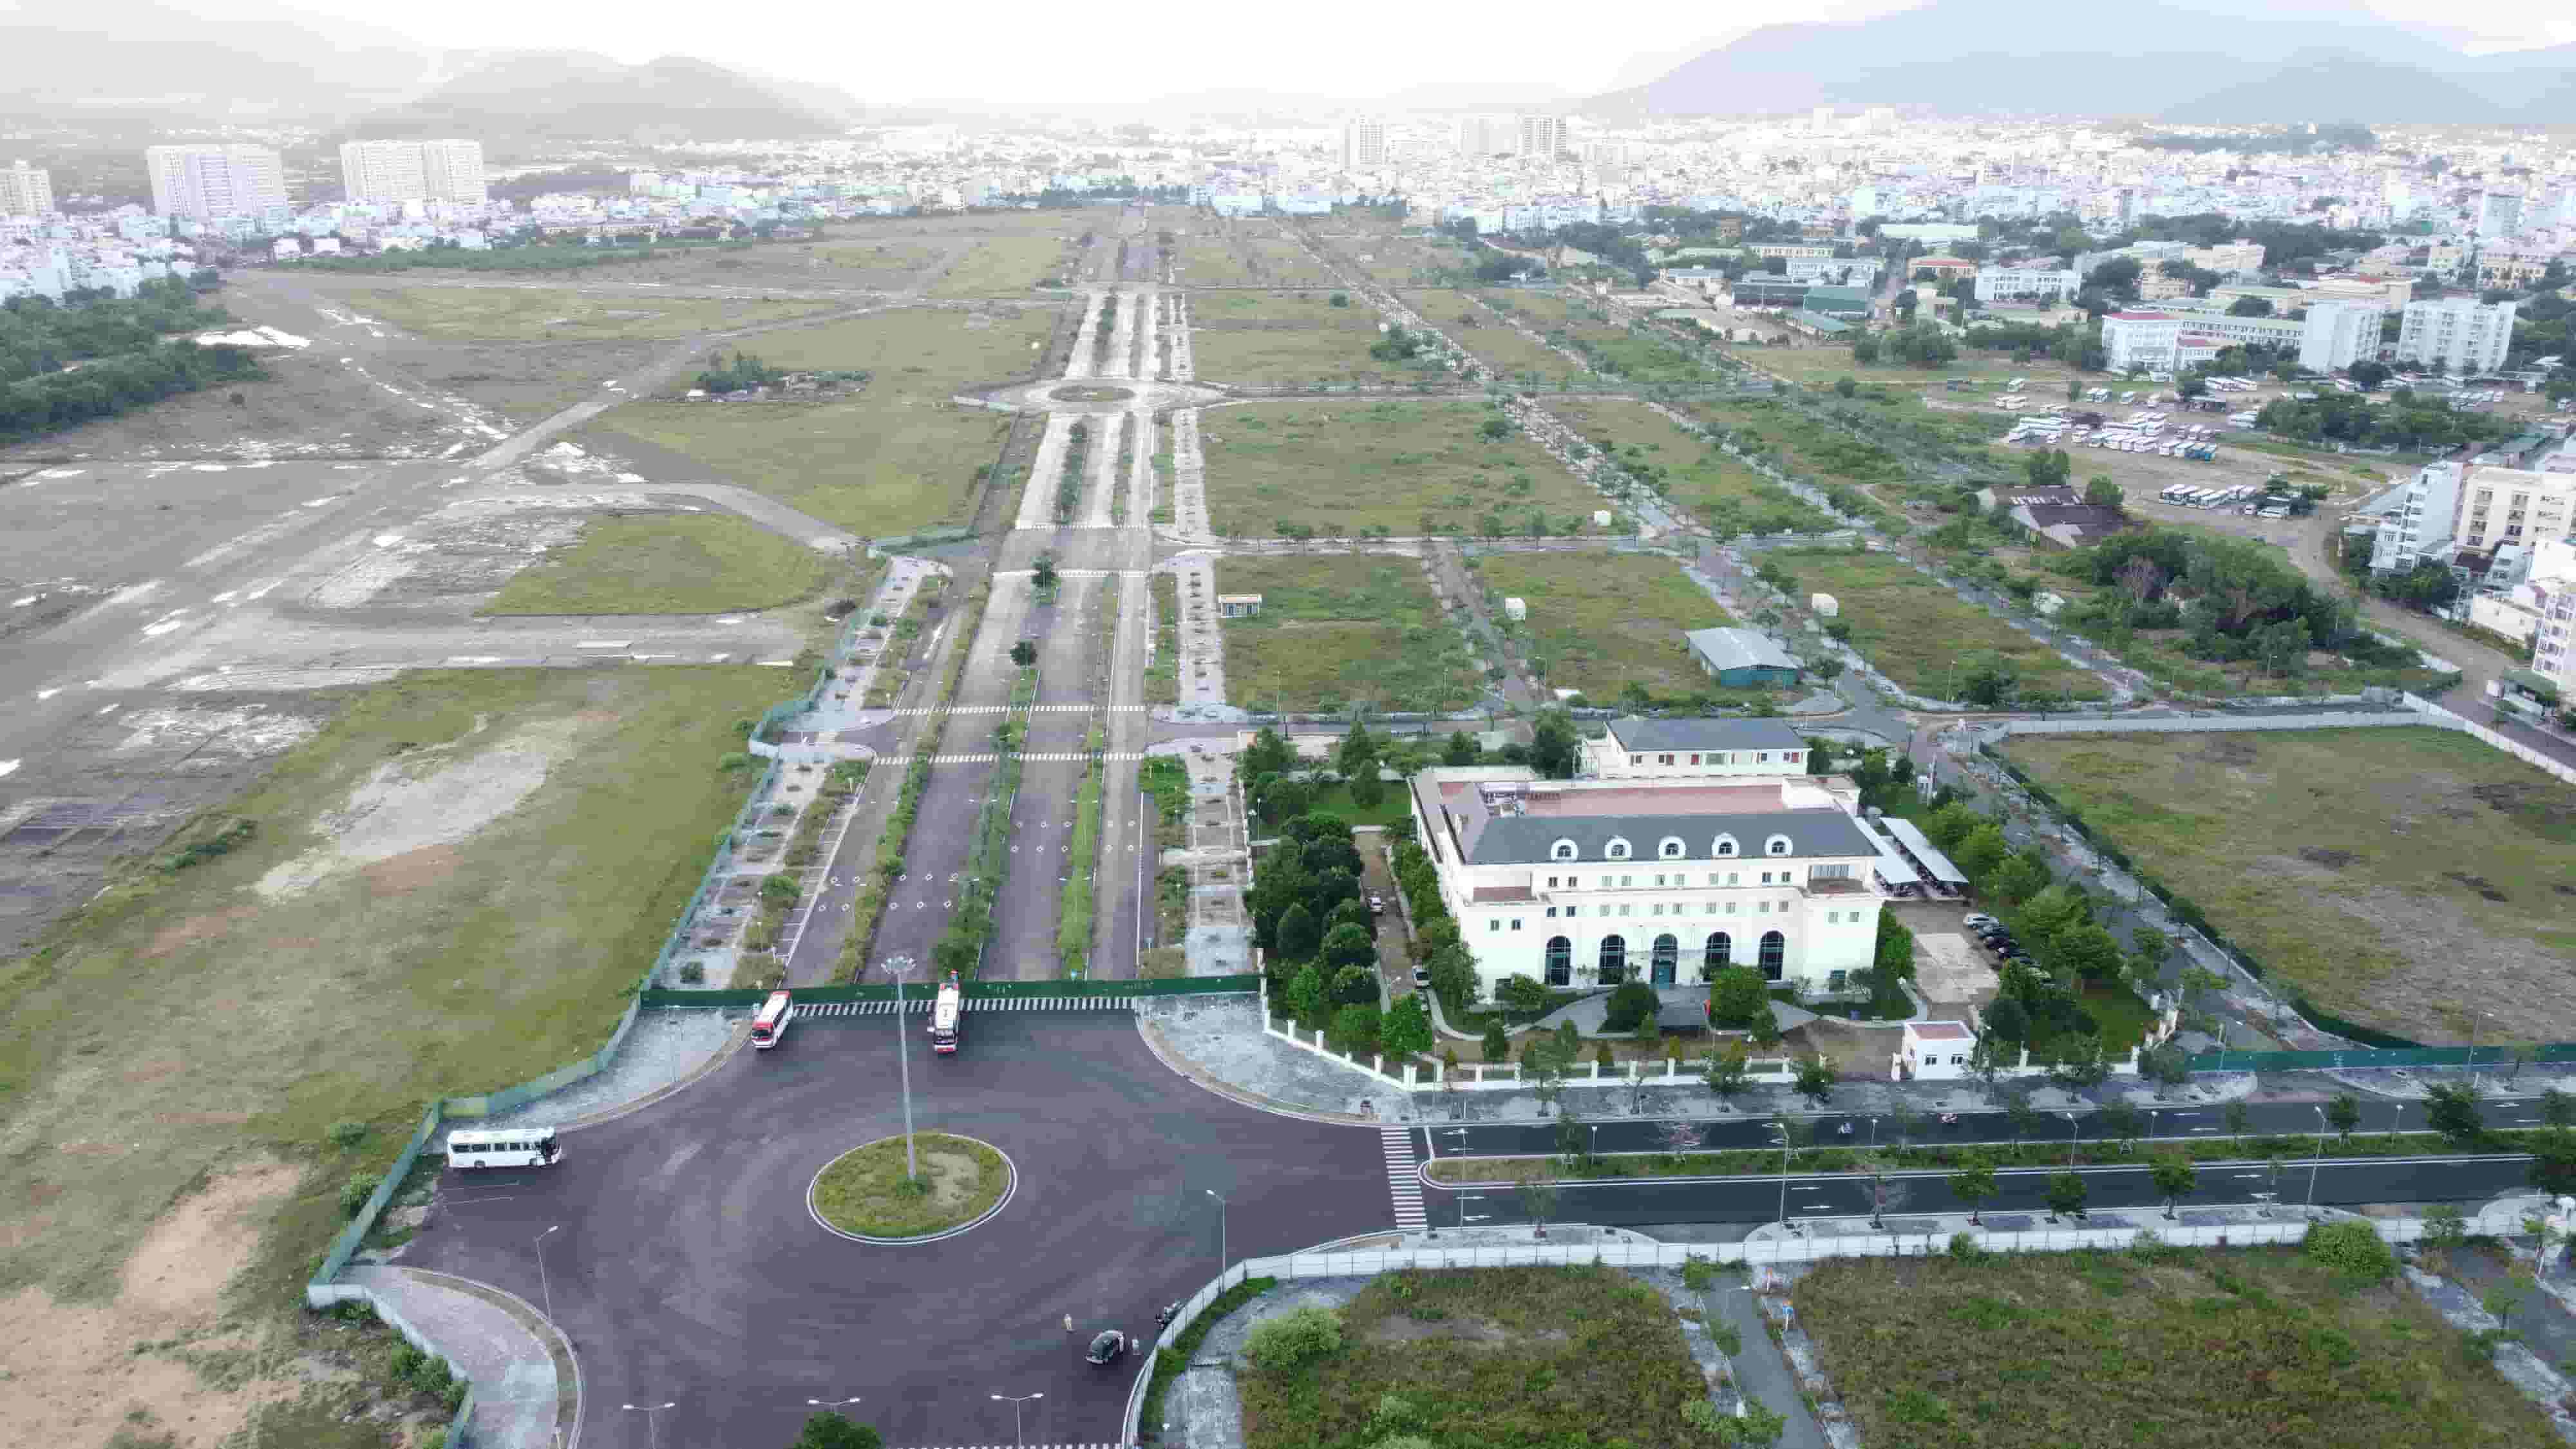 Tháng 10.2016, UBND tỉnh Khánh Hòa ký quyết định thu hồi 62,3ha đất tại khu vực sân bay Nha Trang để giao Công ty CP Tập đoàn Phúc Sơn (công ty Phúc Sơn) thực hiện dự án khu trung tâm đô thị - dịch vụ - tài chính - du lịch Nha Trang (một phần diện tích sân bay Nha Trang cũ) gồm phân khu 2A, 2 và 3.